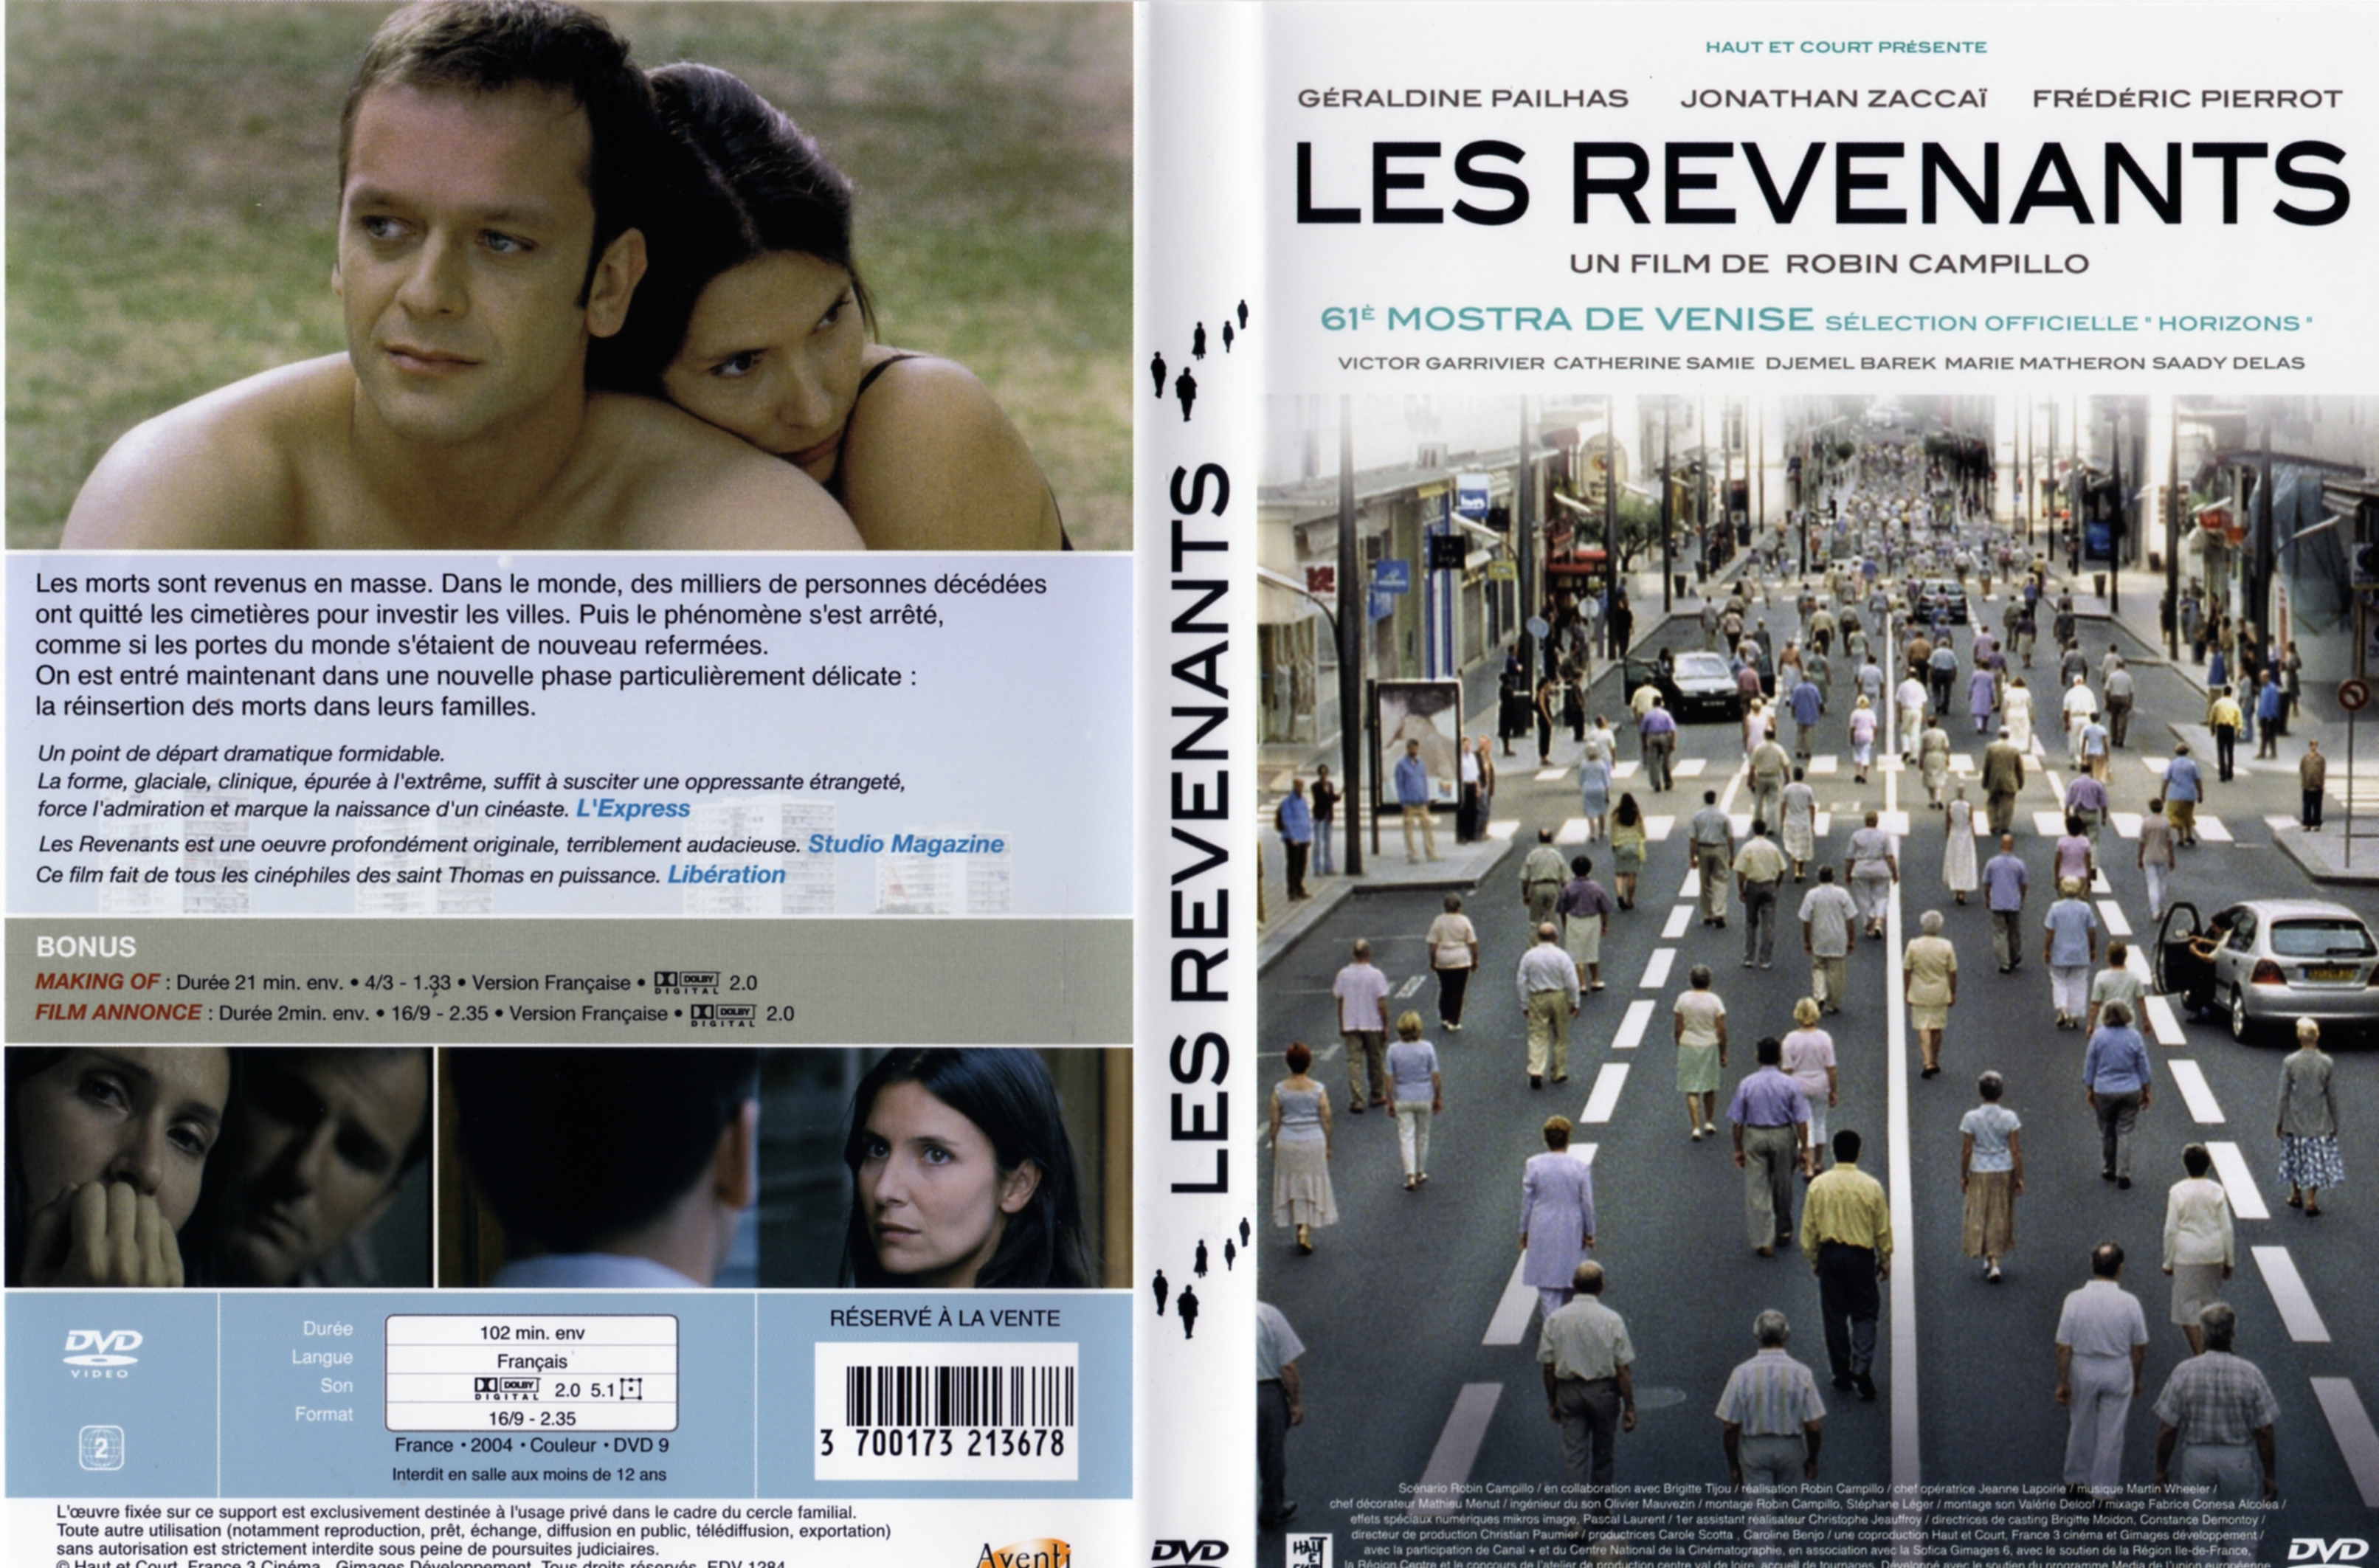 Jaquette DVD Les revenants